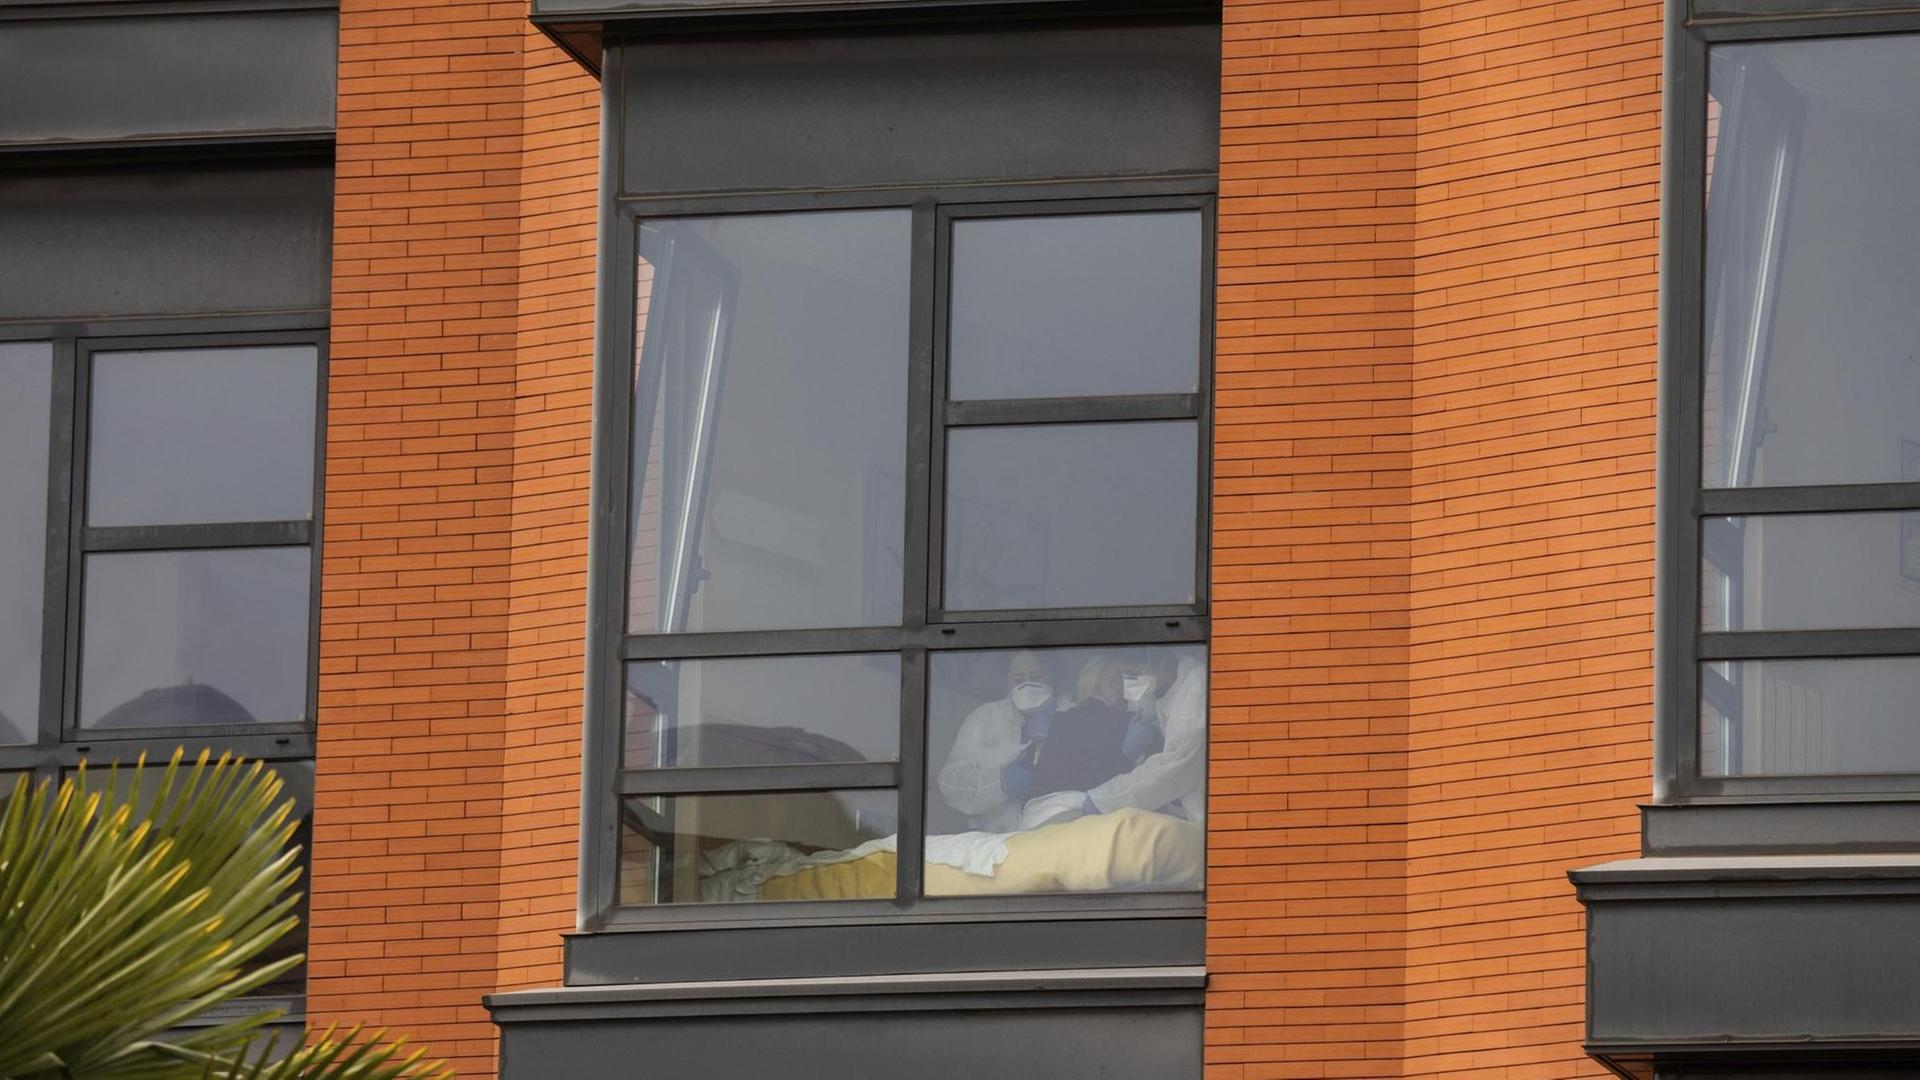 Man sieht die beiden Pflegekräfte und die Seniorin undeutlich durch ein Fenster an der Fassade. Daneben zwei weitere Fenster.